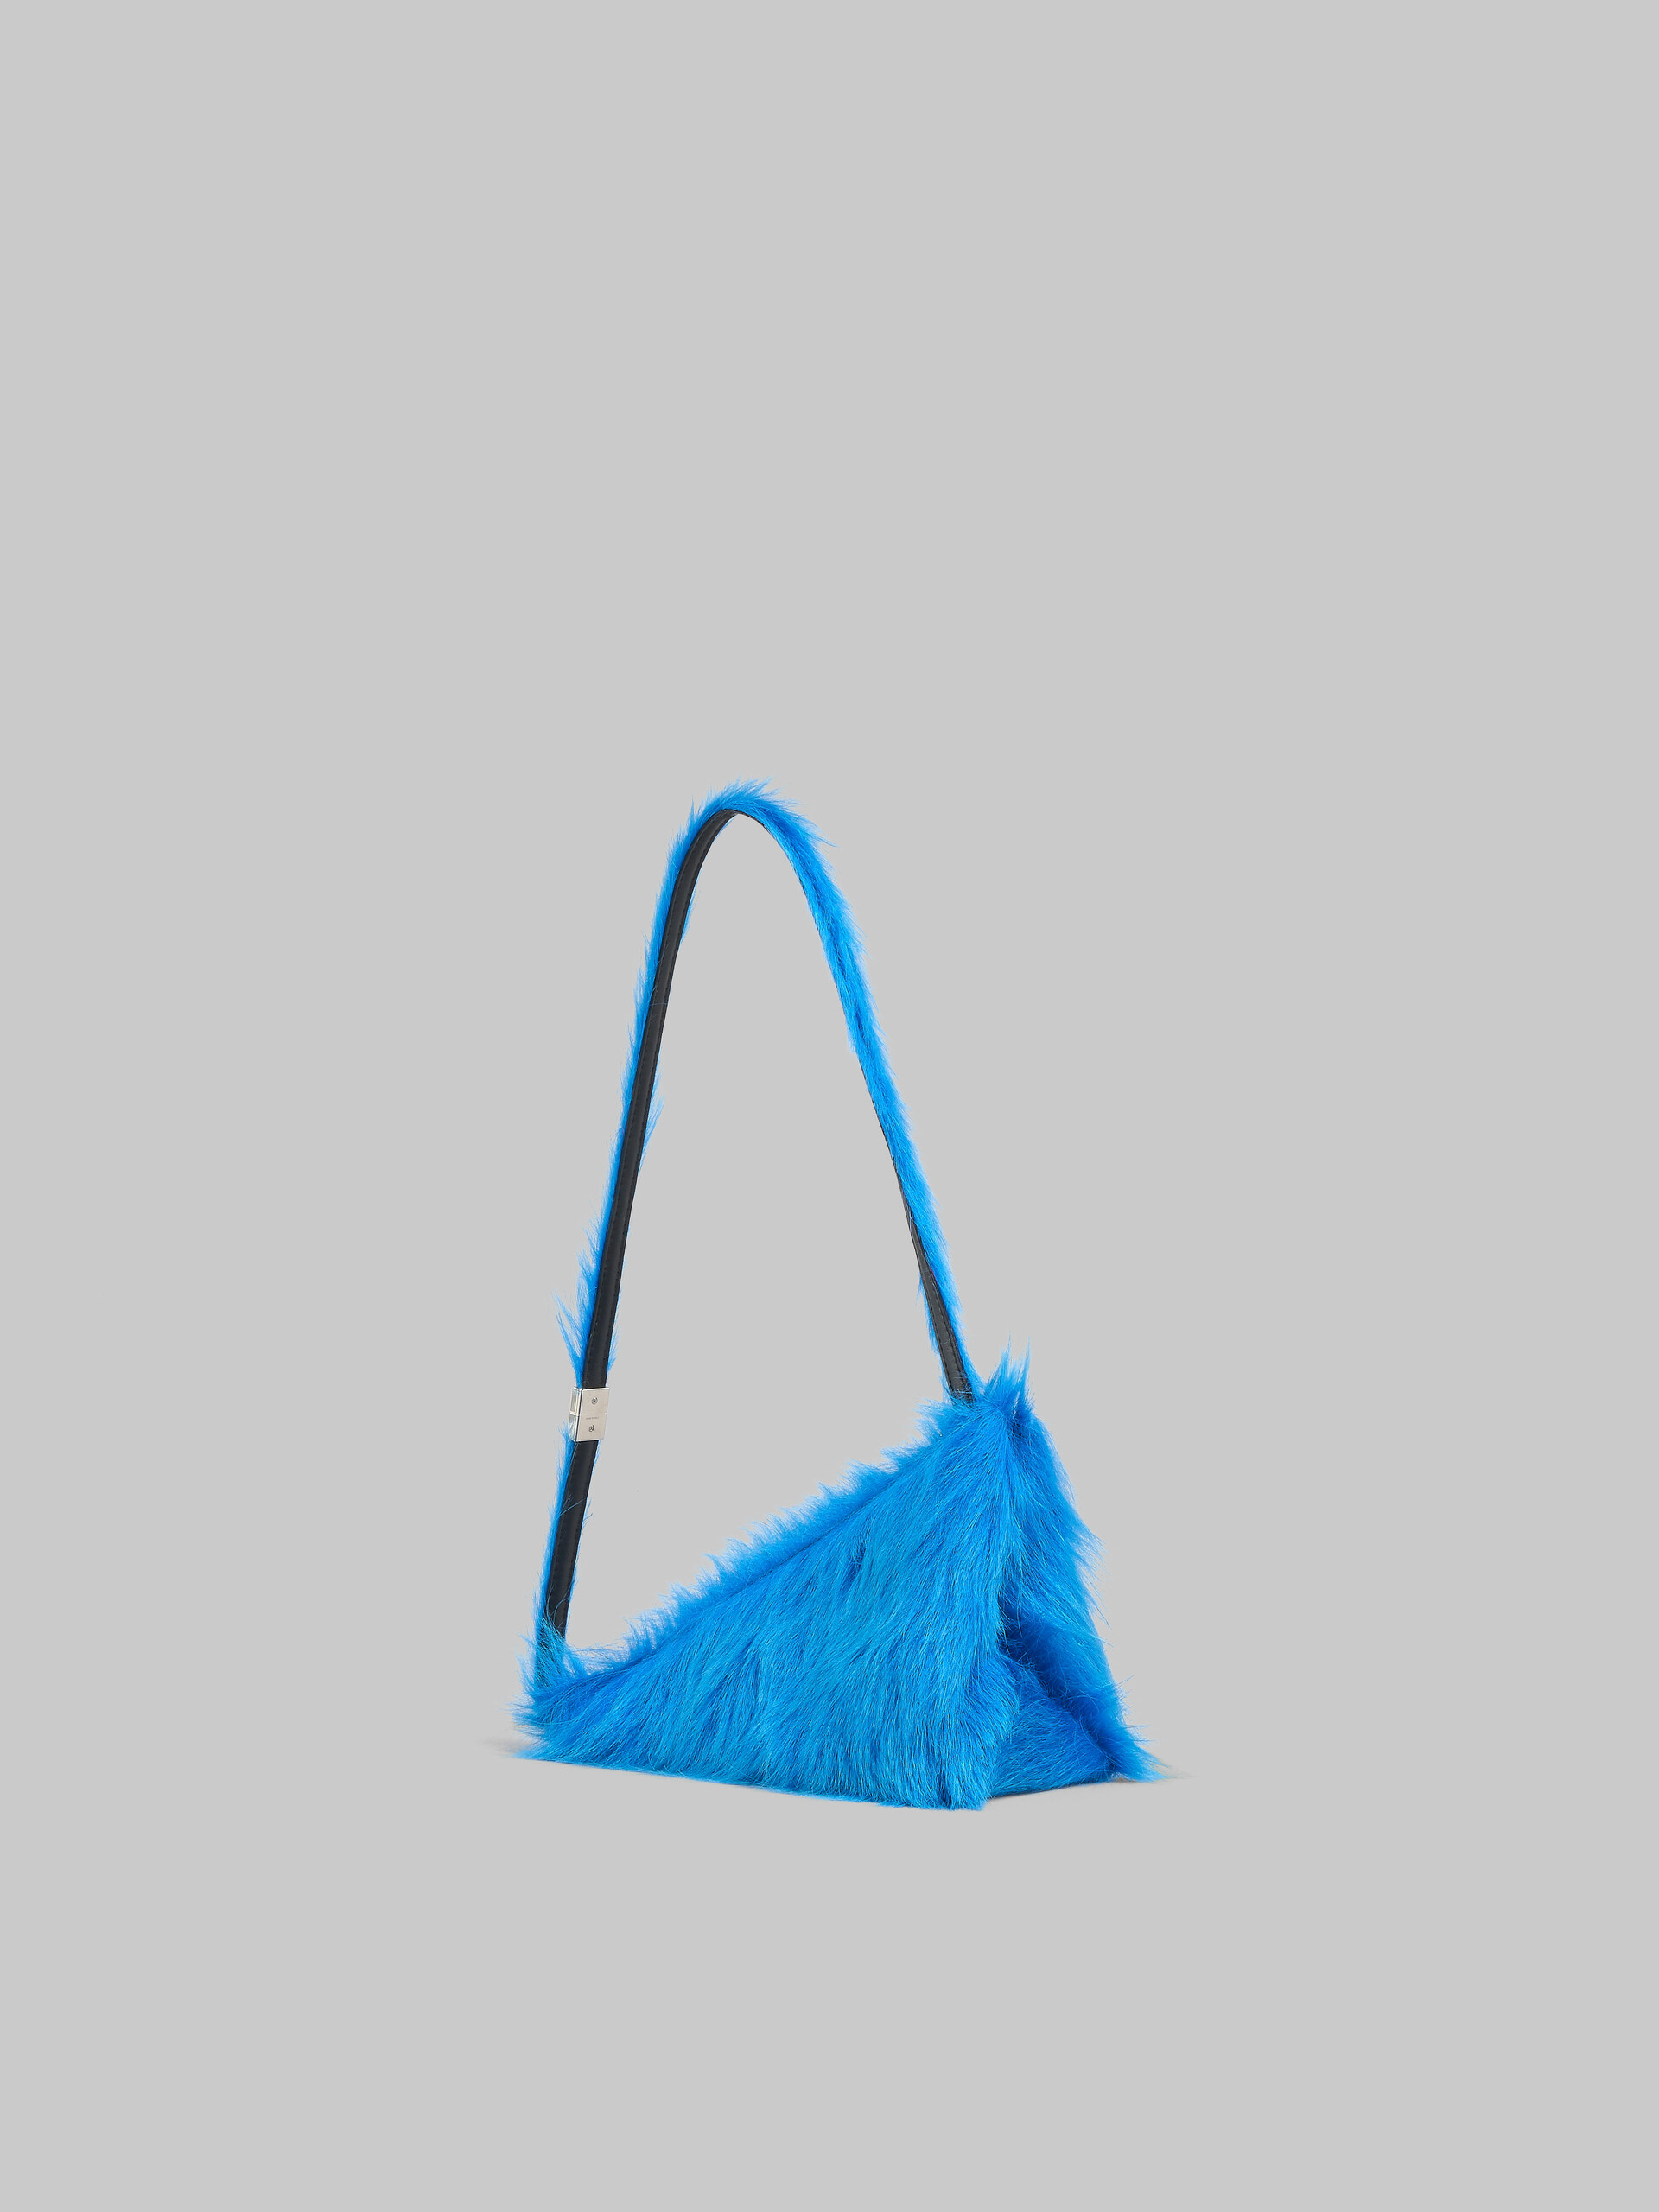 Borsa Prisma a triangolo in vitello a pelo lungo blu - Borse a spalla - Image 3